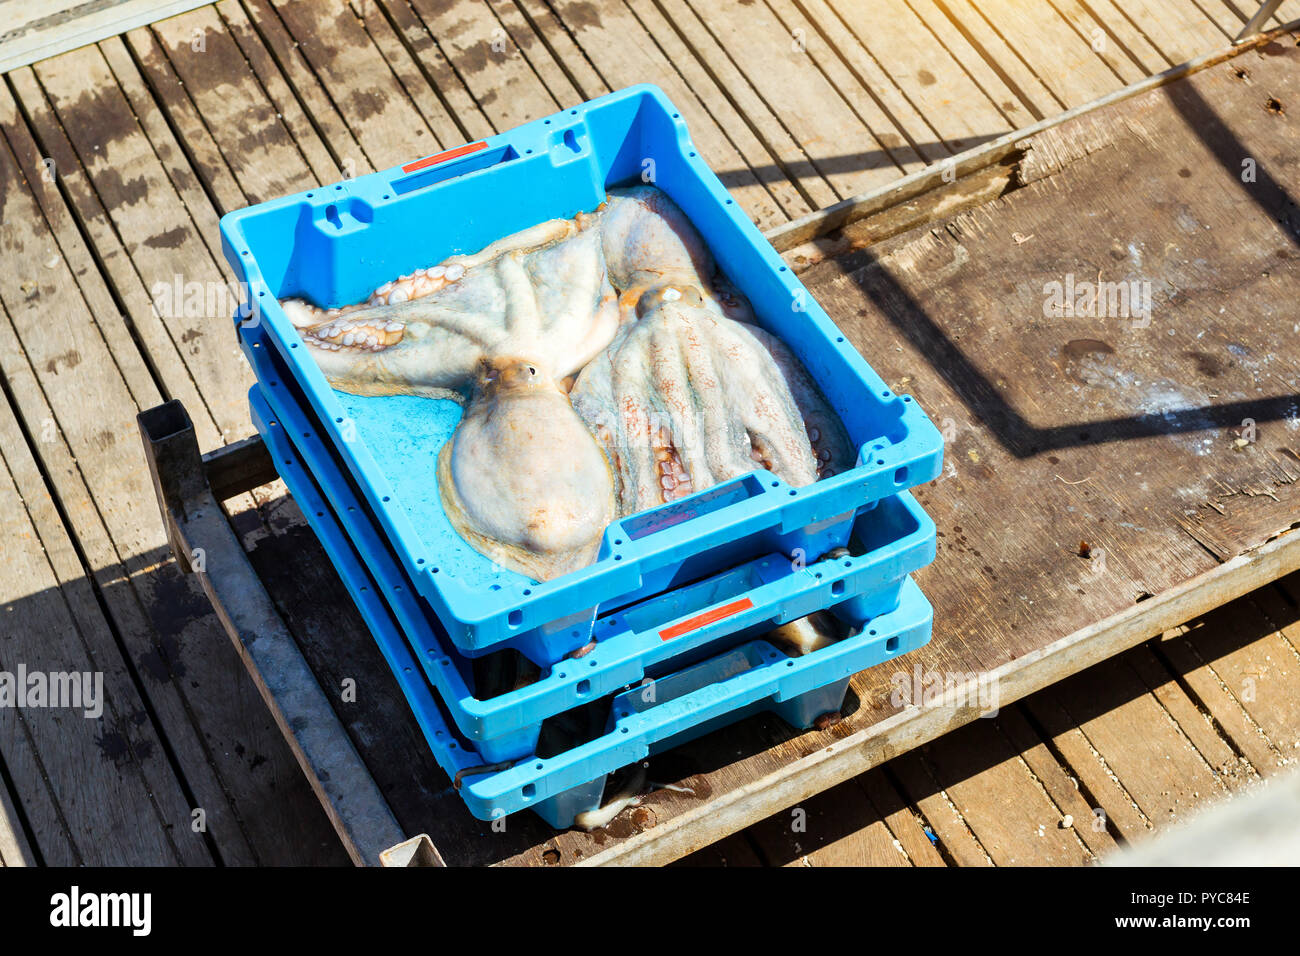 Blauer Kunststoffbehälter mit Fang von Meer Köstlichkeiten Octopus. Auktion für Großhändler und Restaurants. Blanes, Spanien, Costa Brava. Angeln am Pier im Hafen Blanes Stockfoto